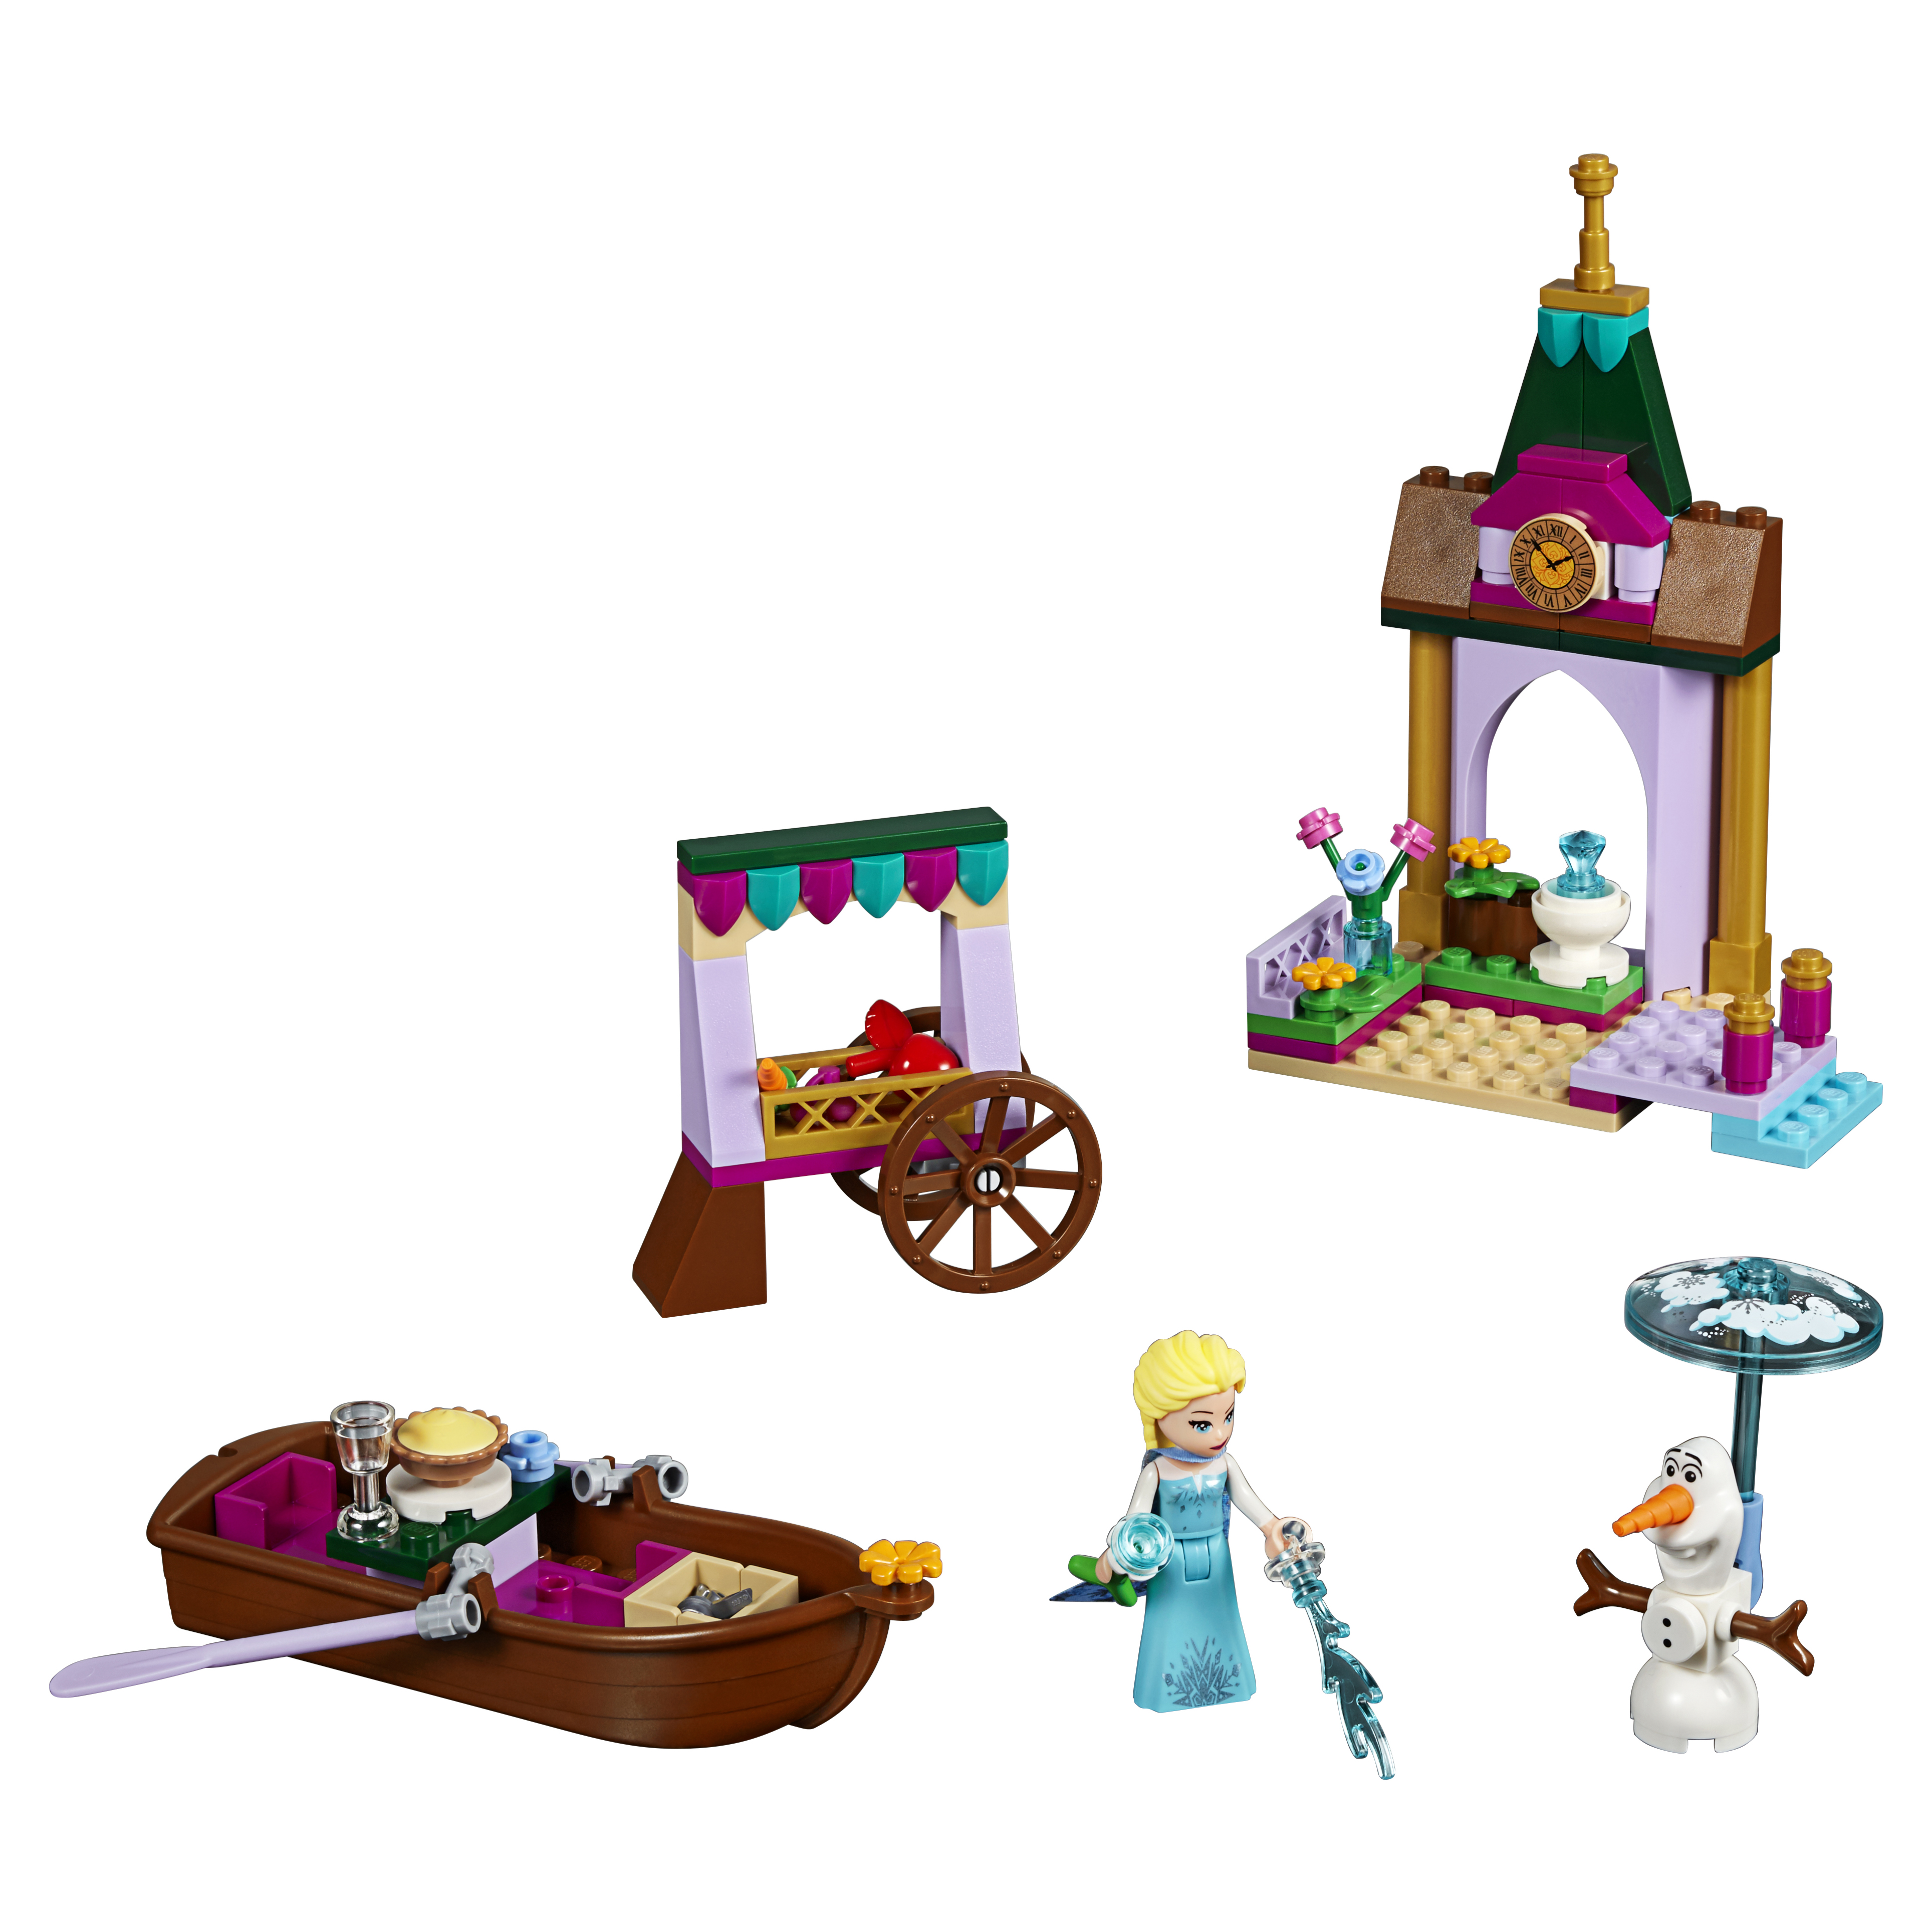 Конструктор LEGO Disney Princess Приключения Эльзы на рынке (41155) lego disney princess конструктор двор замка эльзы